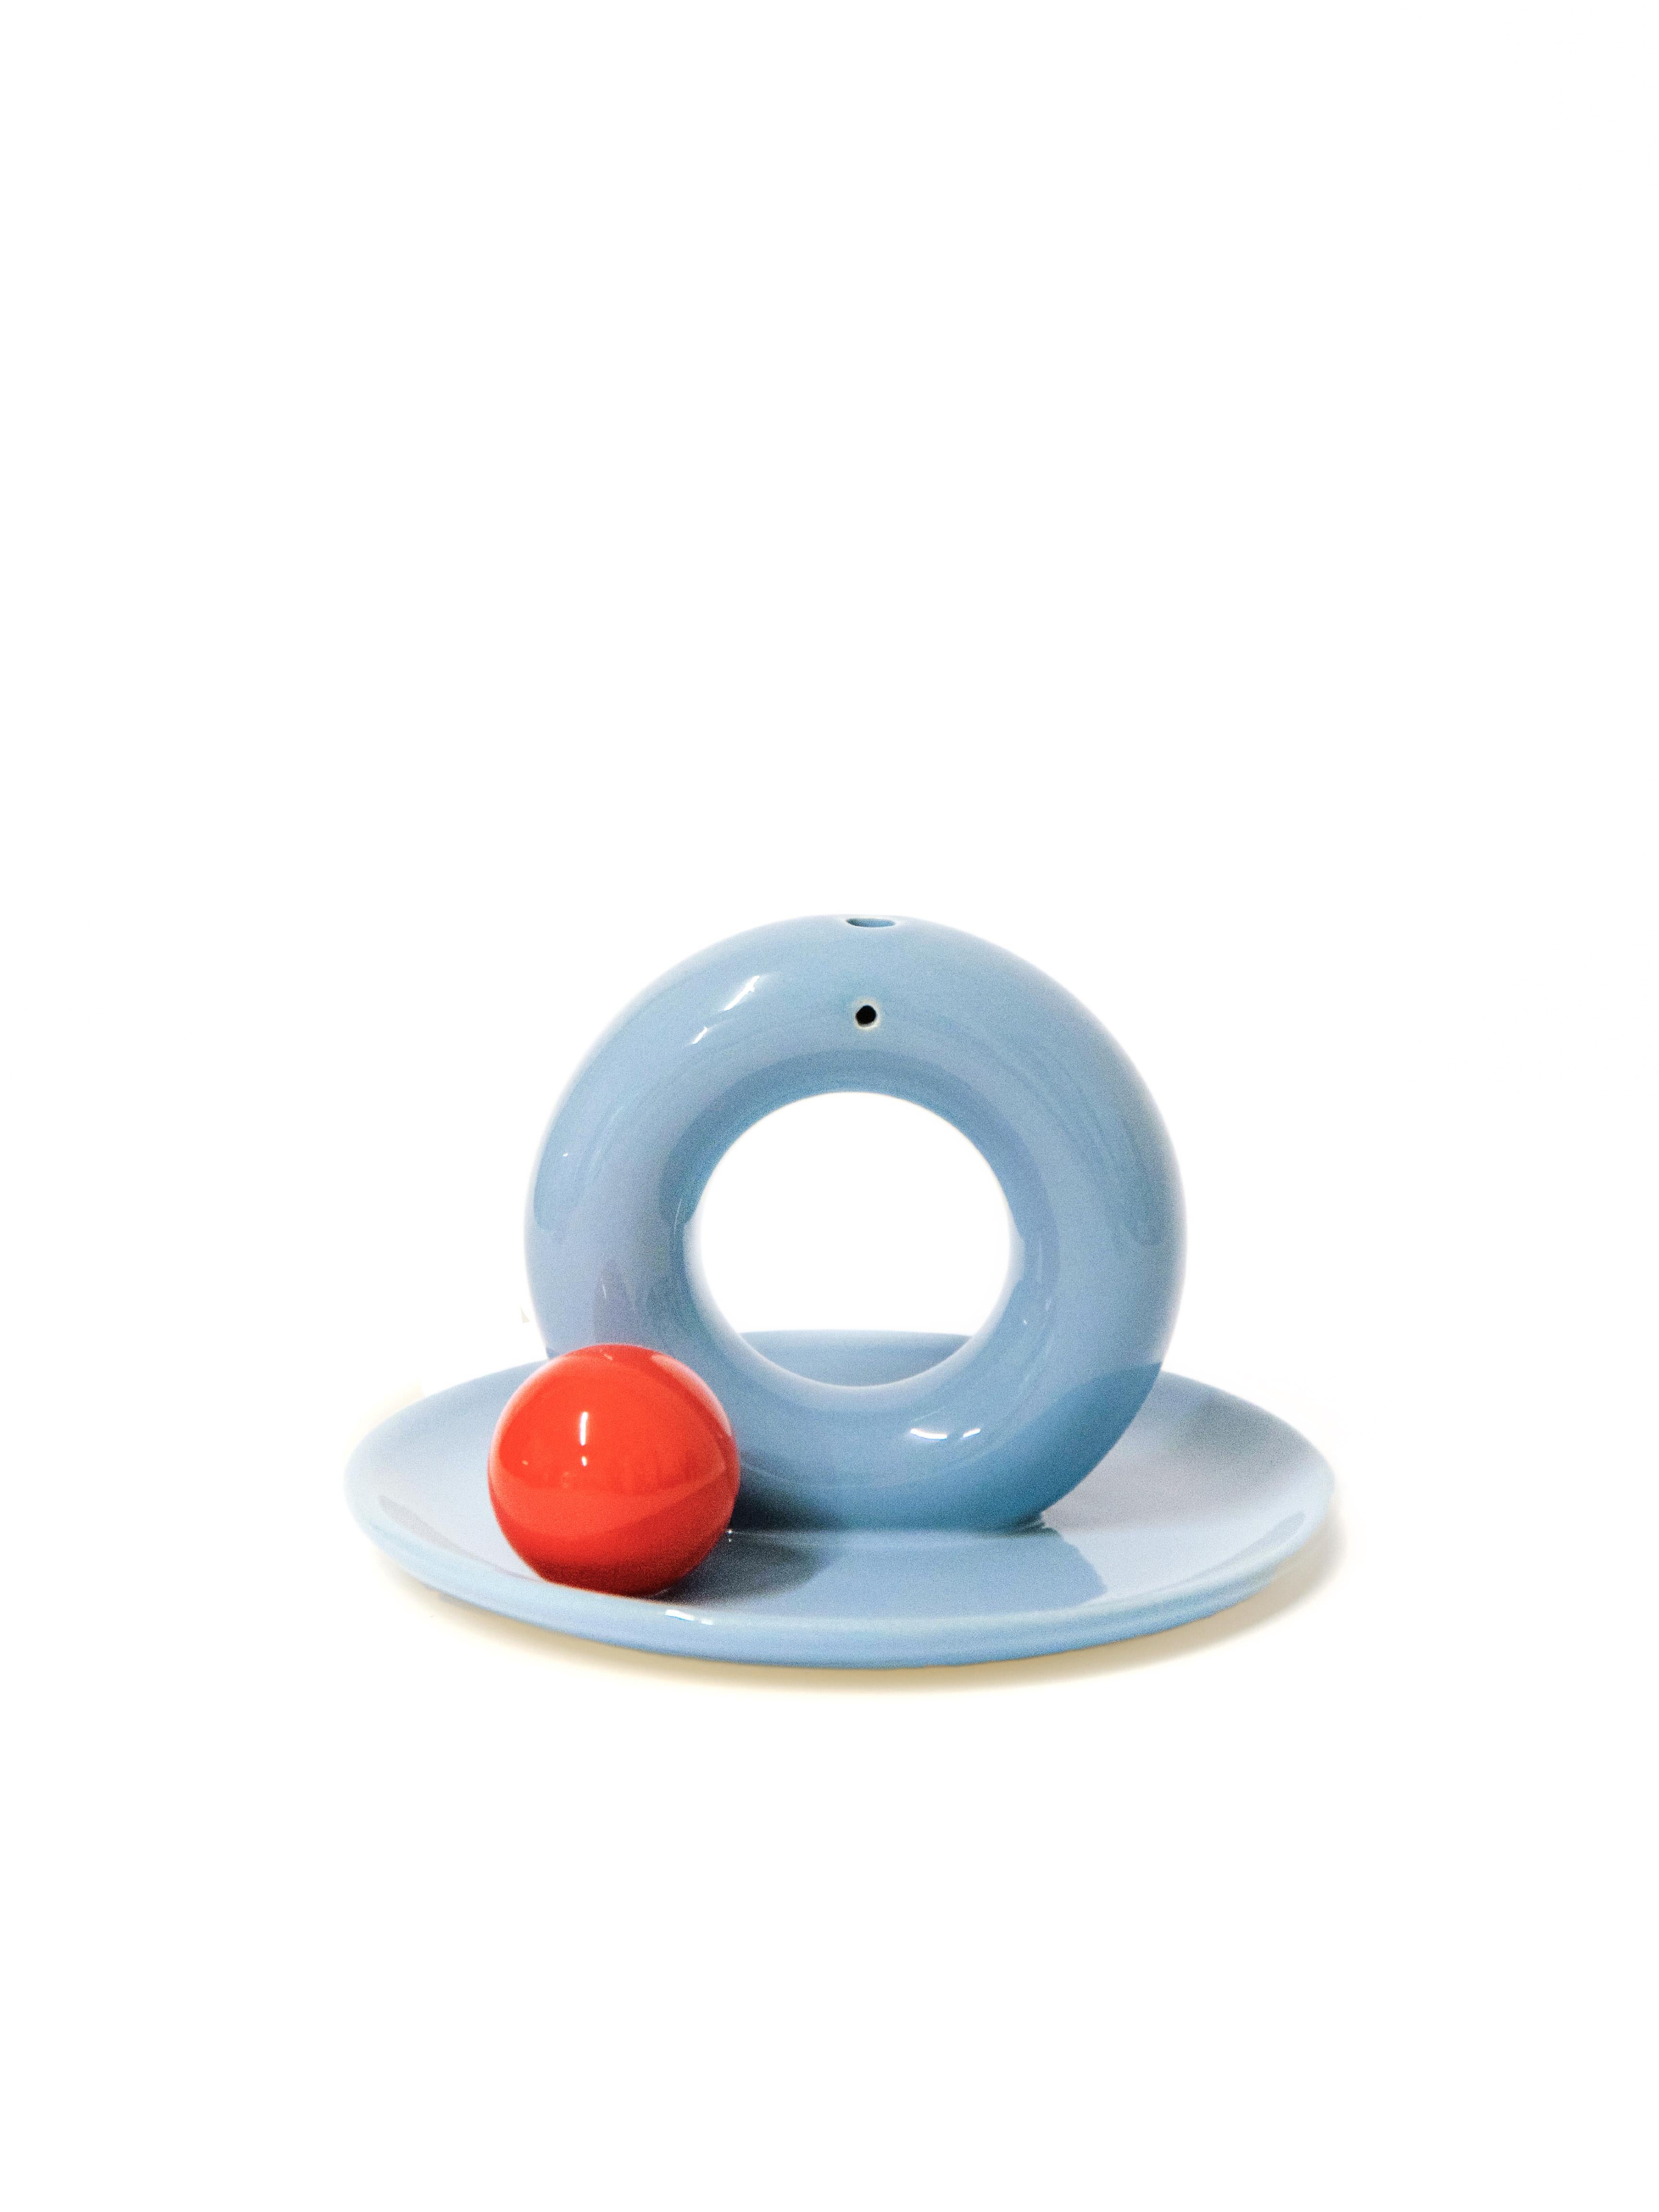 Aniela MINI est la réponse au besoin d'un petit objet - un sous-verre qui peut être utilisé pour tenir des bijoux, des bonbons ou brûler des bâtons d'encens.


Plateau bleu denim
Boule rouge

ø 15 cm
deux trous pour l'encens 